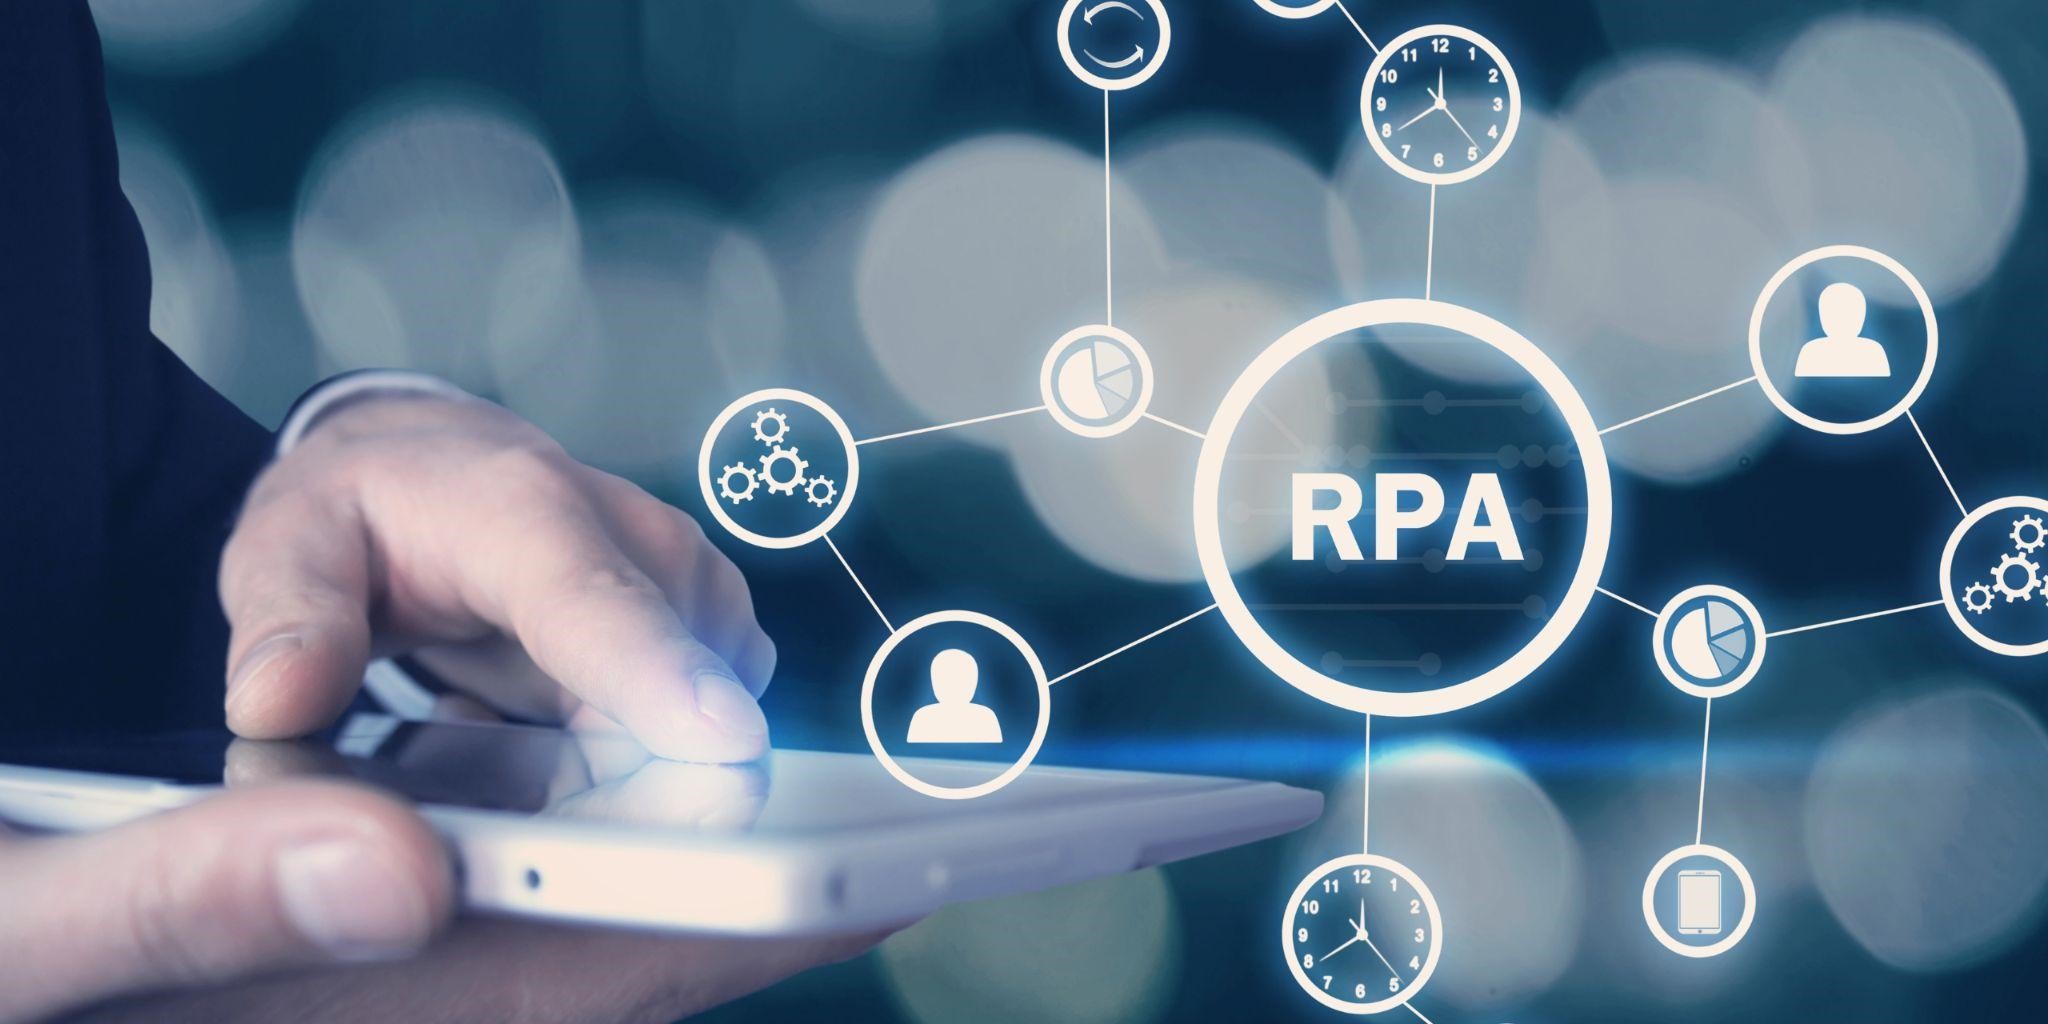 RPAエンジニアに将来性はある？必要なスキルからキャリアパスまでのイメージ画‐スマホを操作しているRPAエンジニアの男性とRPAの文字、人型、メールなどがネットワークで繋がっているイメージ図が写っている写真。